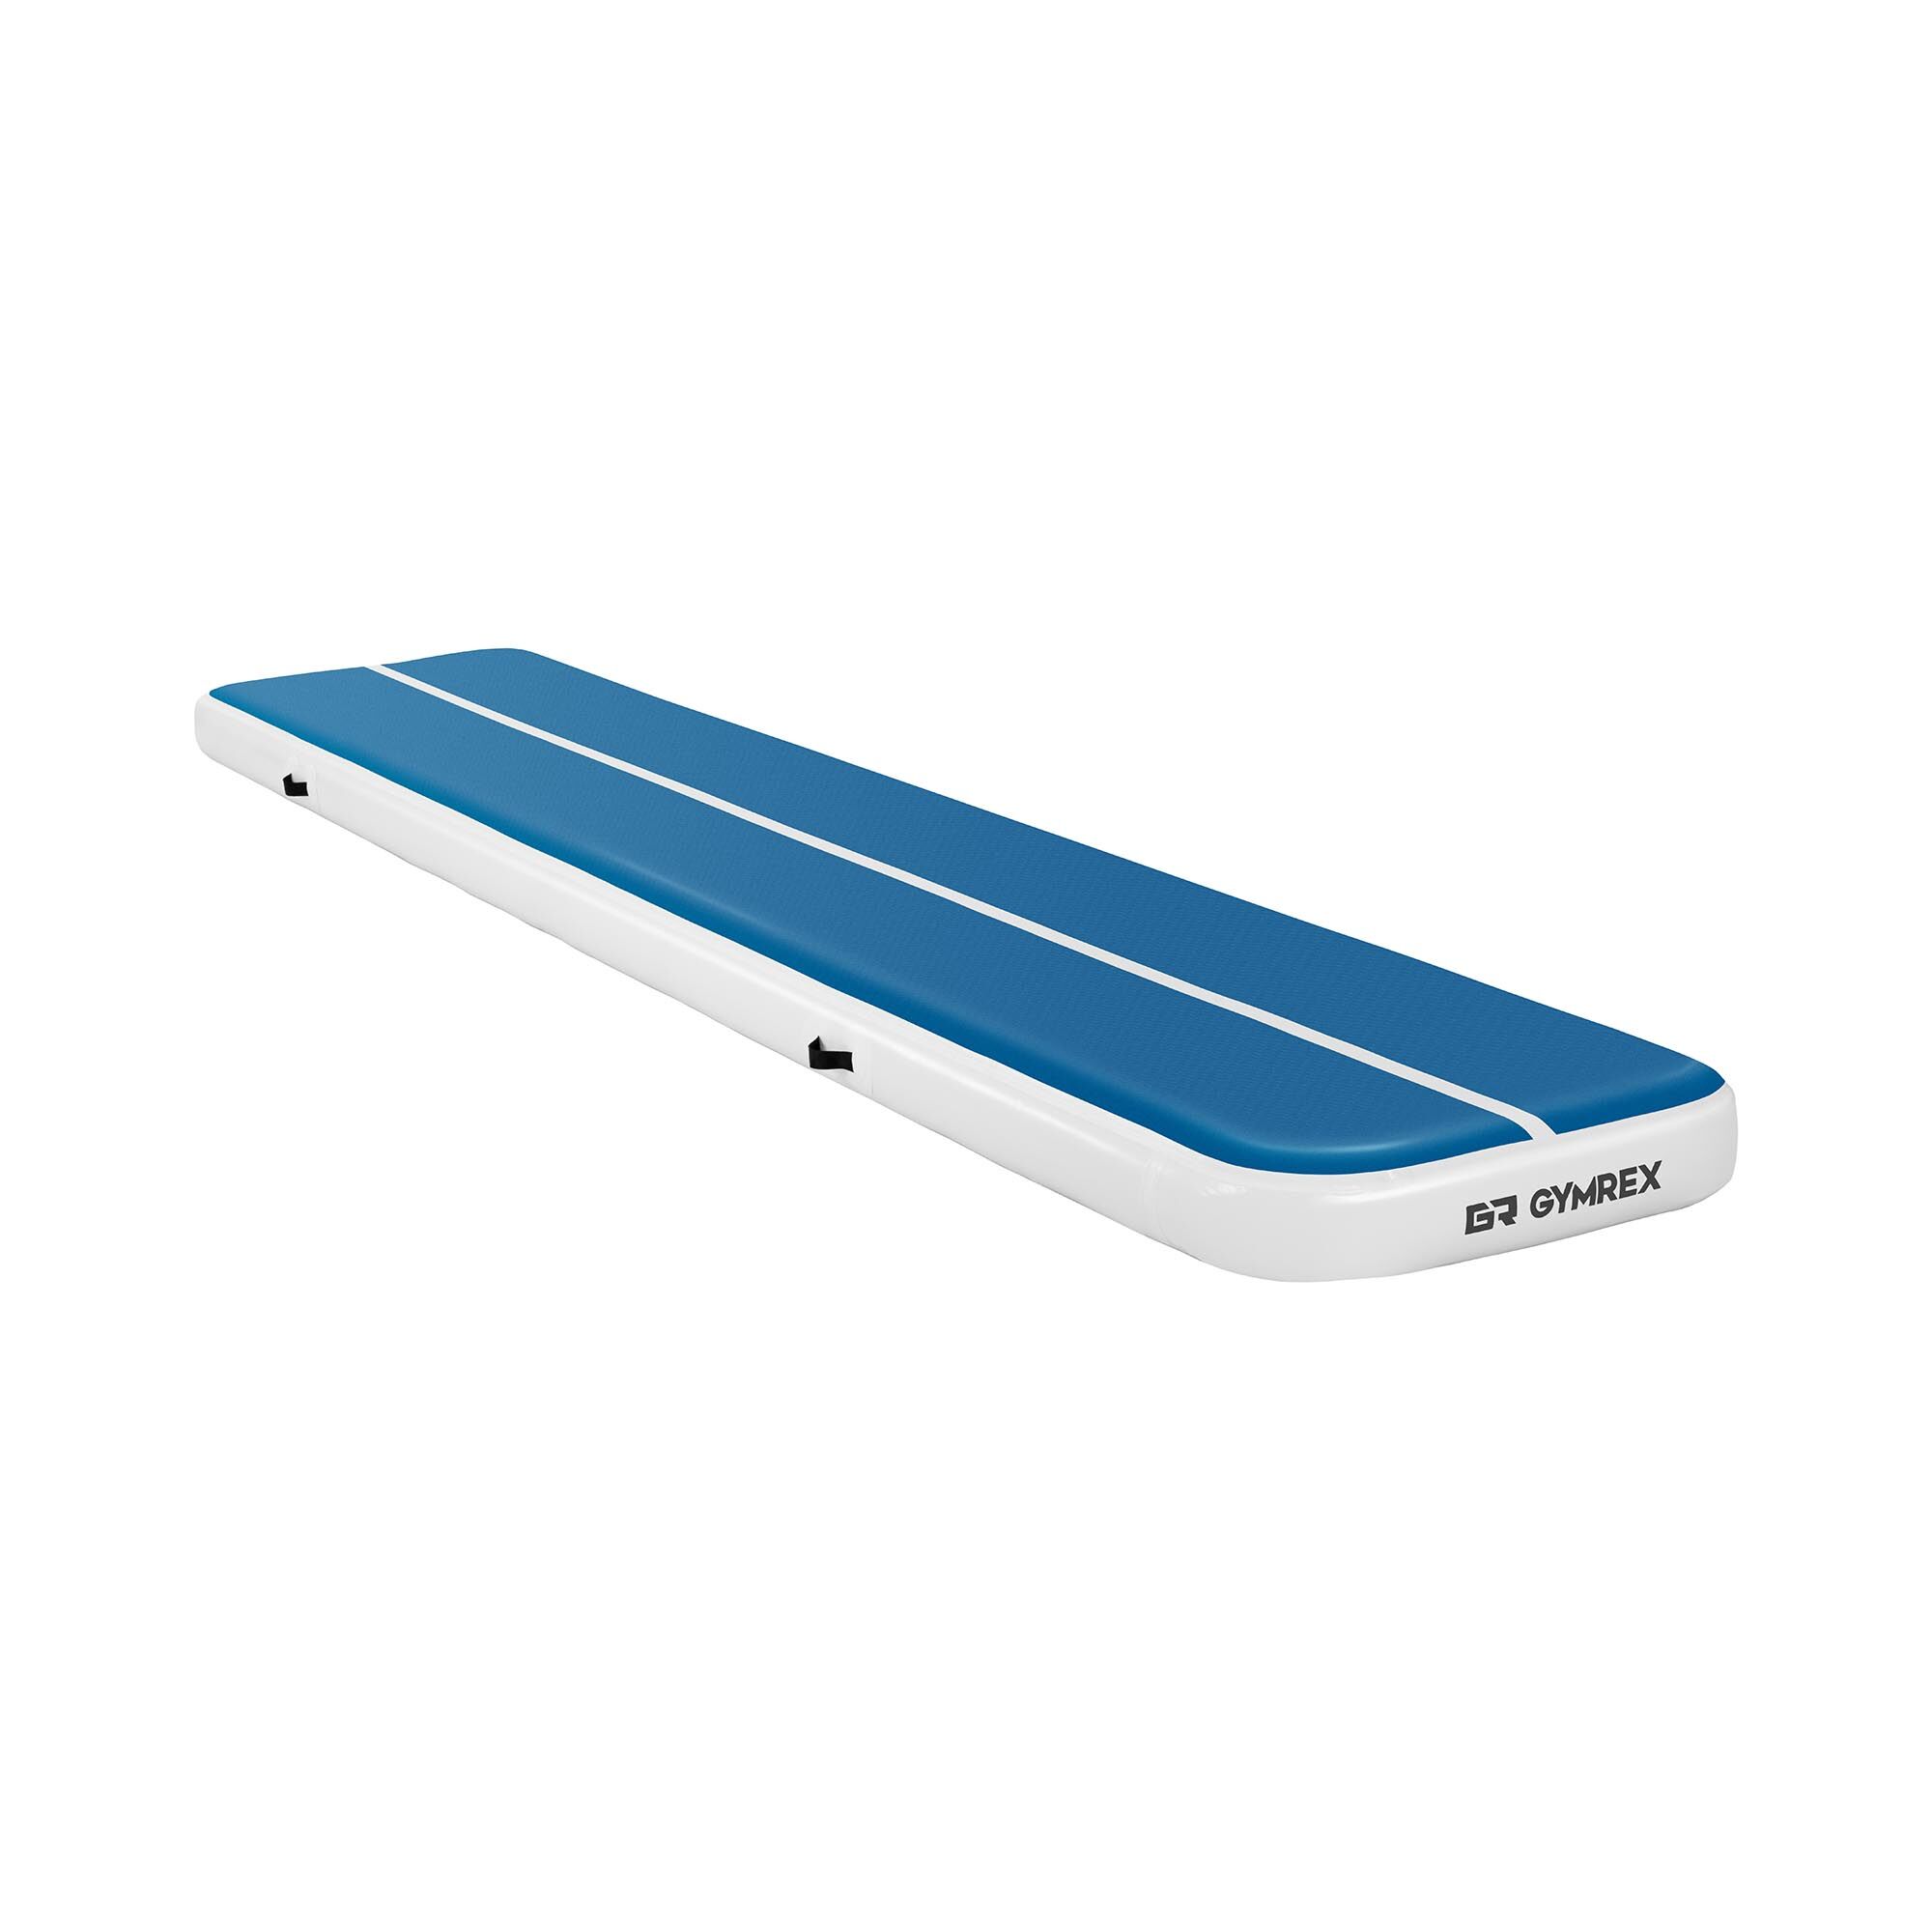 Gymrex Aufblasbare Turnmatte - Airtrack - 500 x 100 x 20 cm - 250 kg - blau/weiß